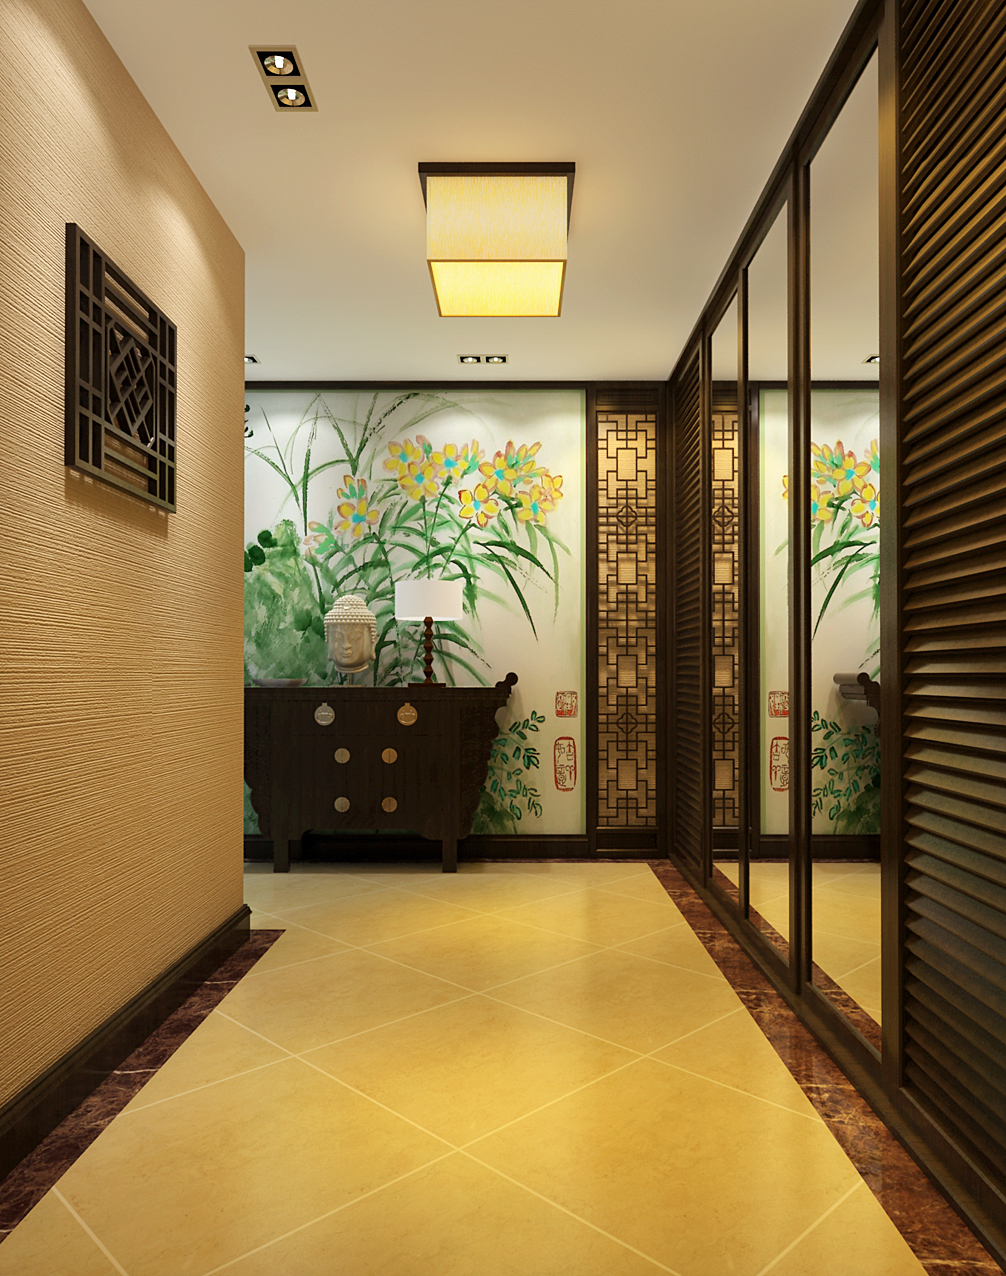 简约 中式 别墅 玄关图片来自实创装饰上海公司在用简约打造高贵典雅的空间感的分享